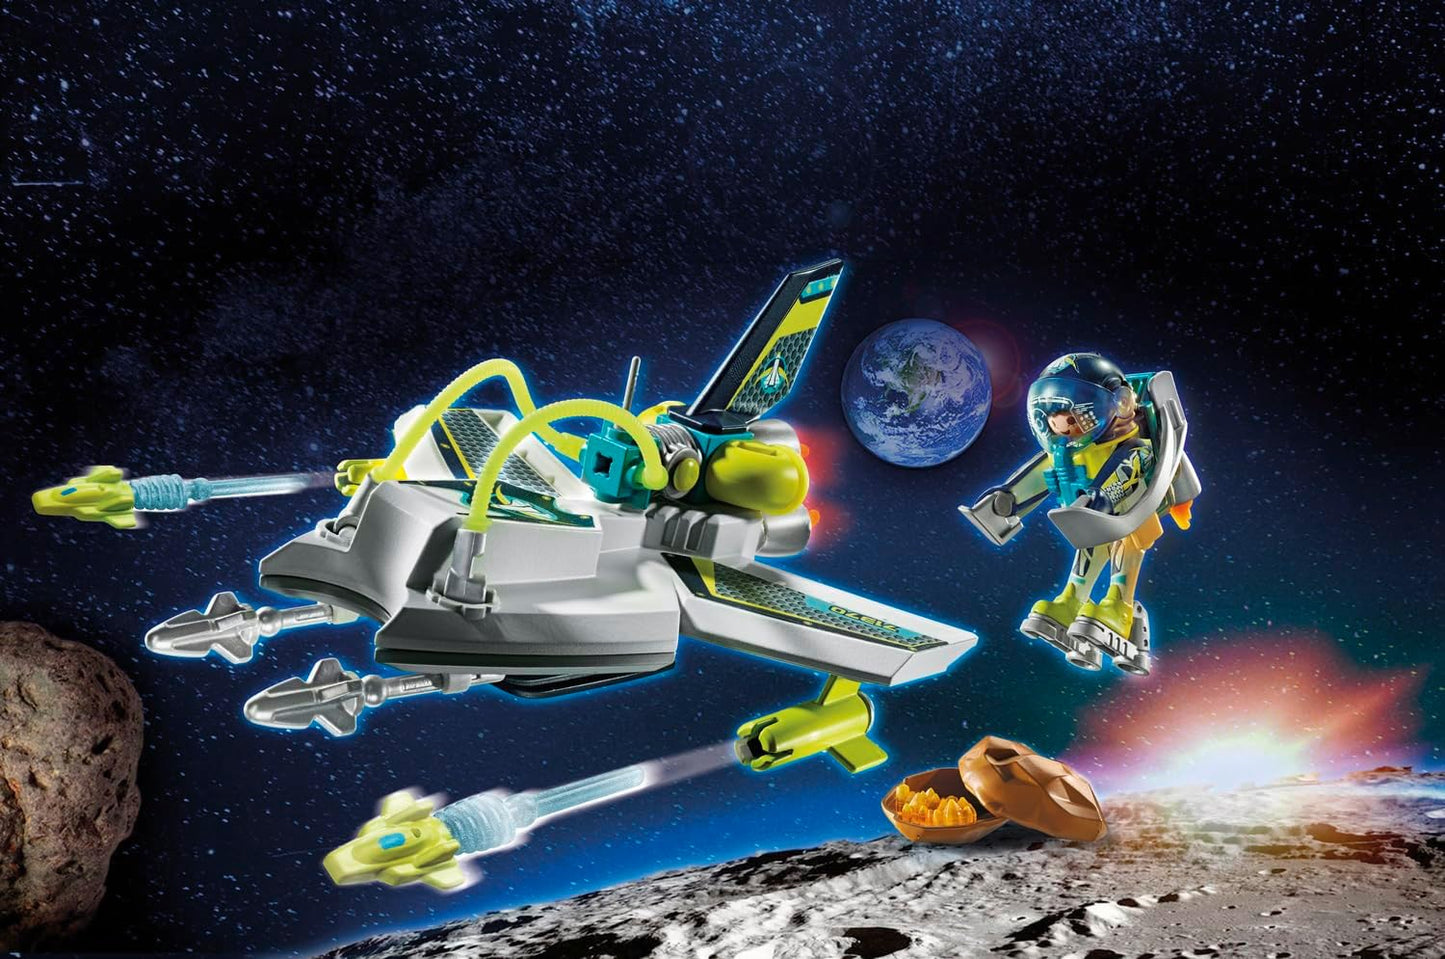 Playmobil  71370 Space Hi-Tech Space Drone, missão no espaço sideral, dramatização divertida e imaginativa, conjuntos de jogos adequados para crianças de 4 anos ou mais